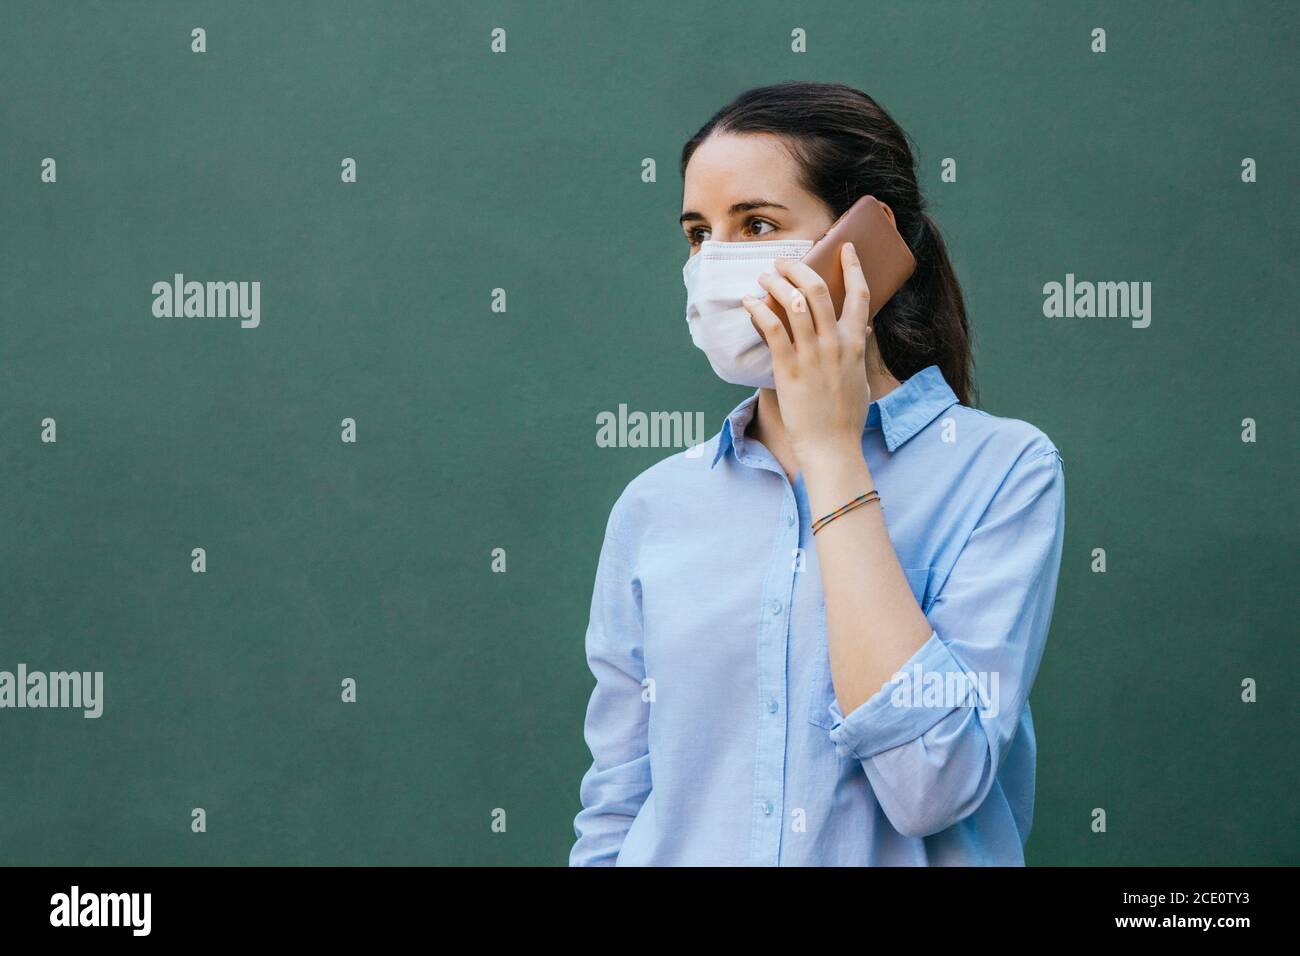 Stock Foto von einer jungen Frau trägt eine Gesichtsmaske Telefongespräch auf grünem Hintergrund und Platz zum Kopieren Auf der linken Seite Stockfoto